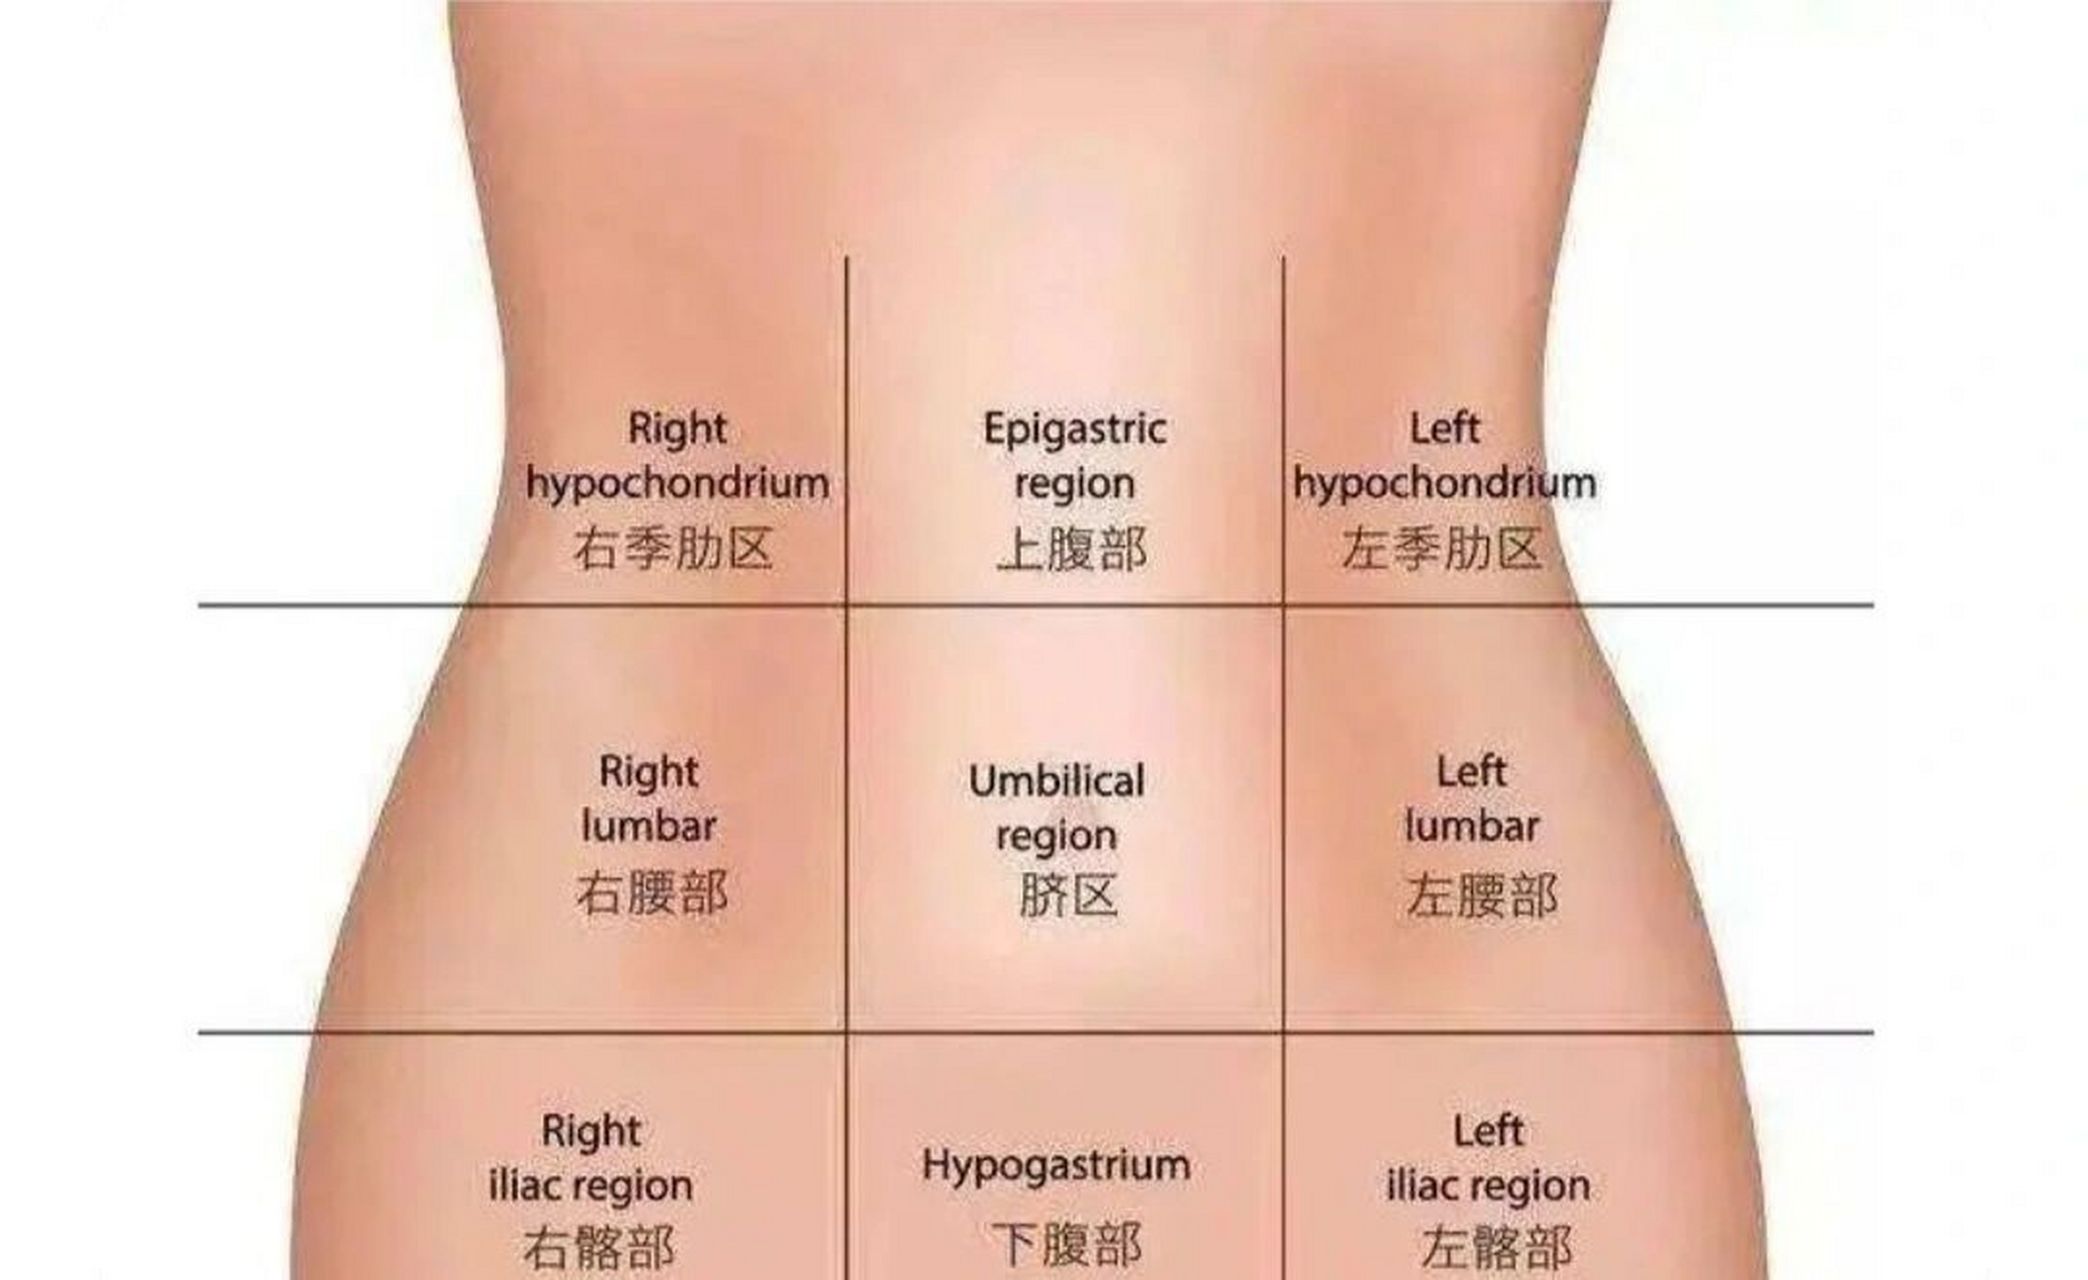 将腹部分为9个区域 左上腹部: 左上腹部的位置一般是胃,是我们体内